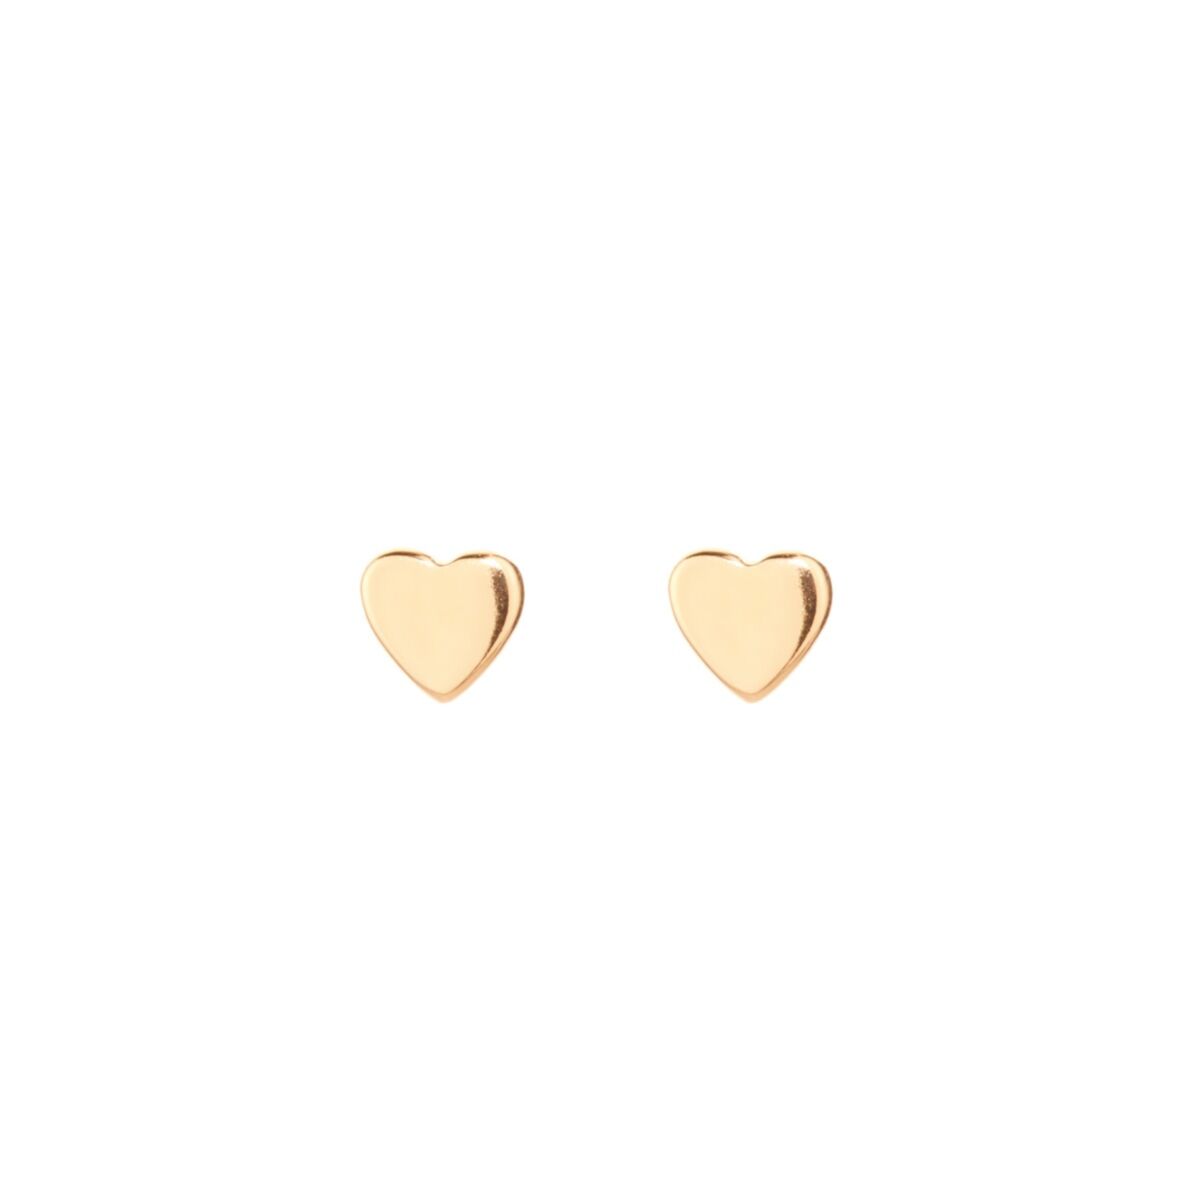 9k yellow gold heart earrings